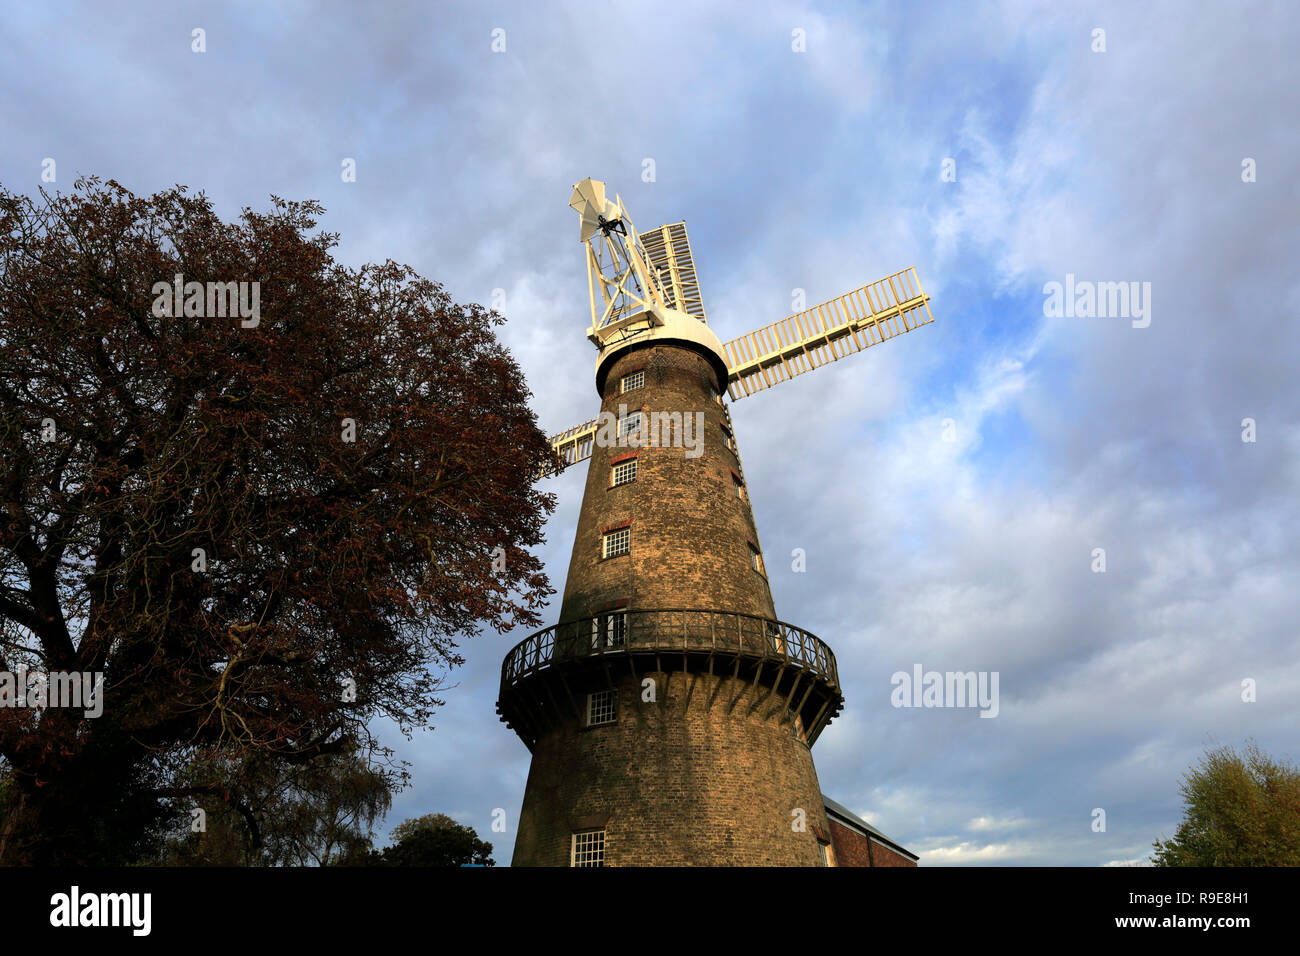 Moulton torre molino (molino de la torre más alta de Gran Bretaña), Moulton village, Lincolnshire, Inglaterra Foto de stock